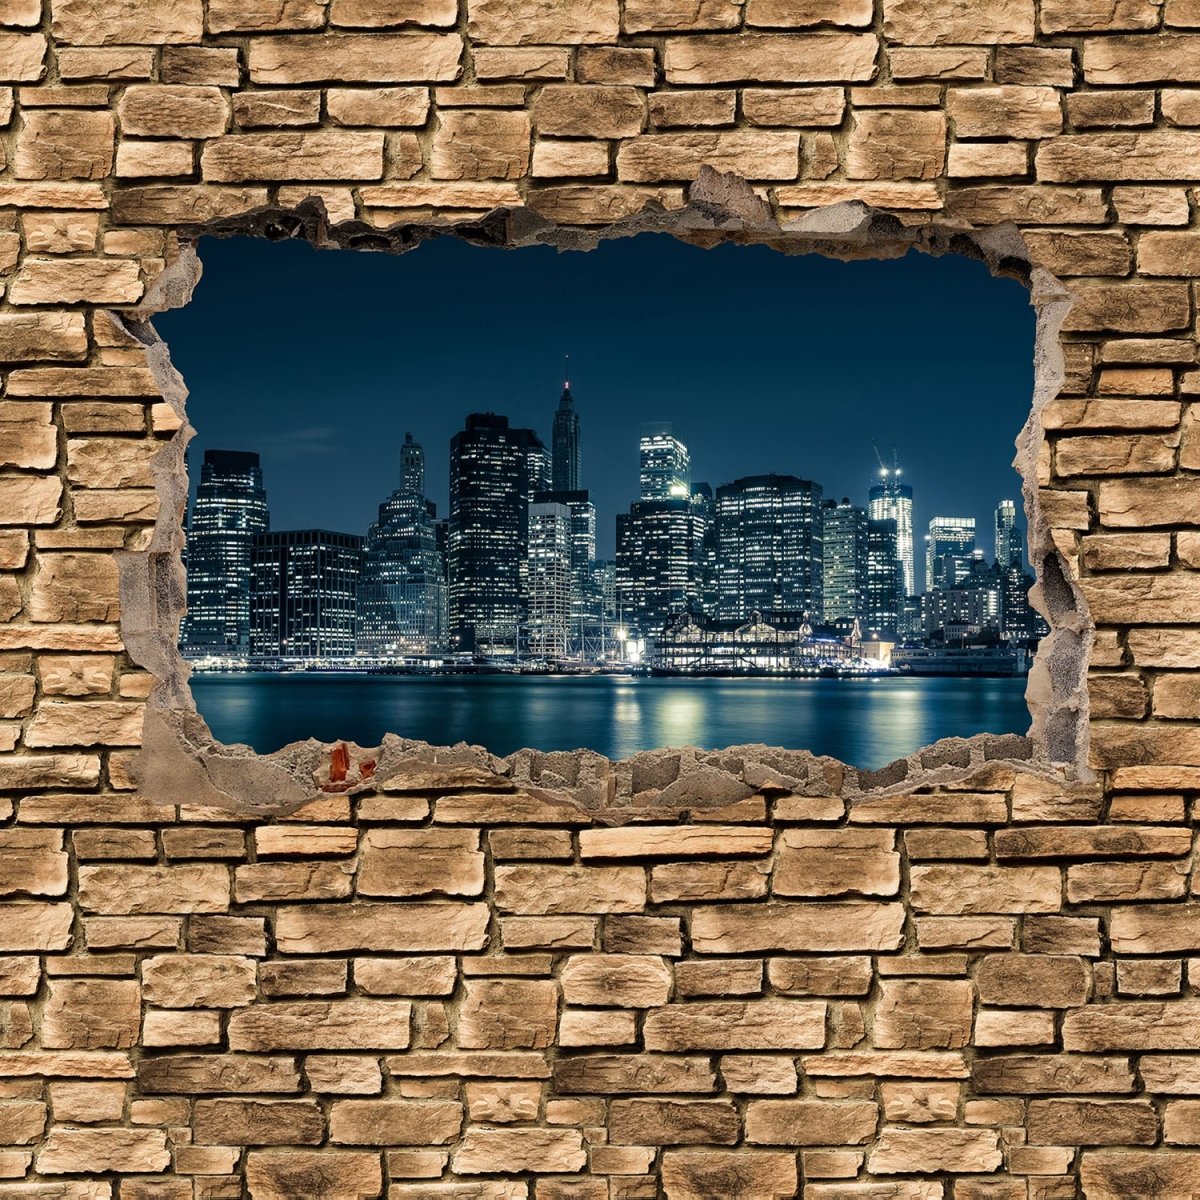 Beistelltisch 3D New York City by Nacht - Steinmauer M0653 entdecken - Bild 2